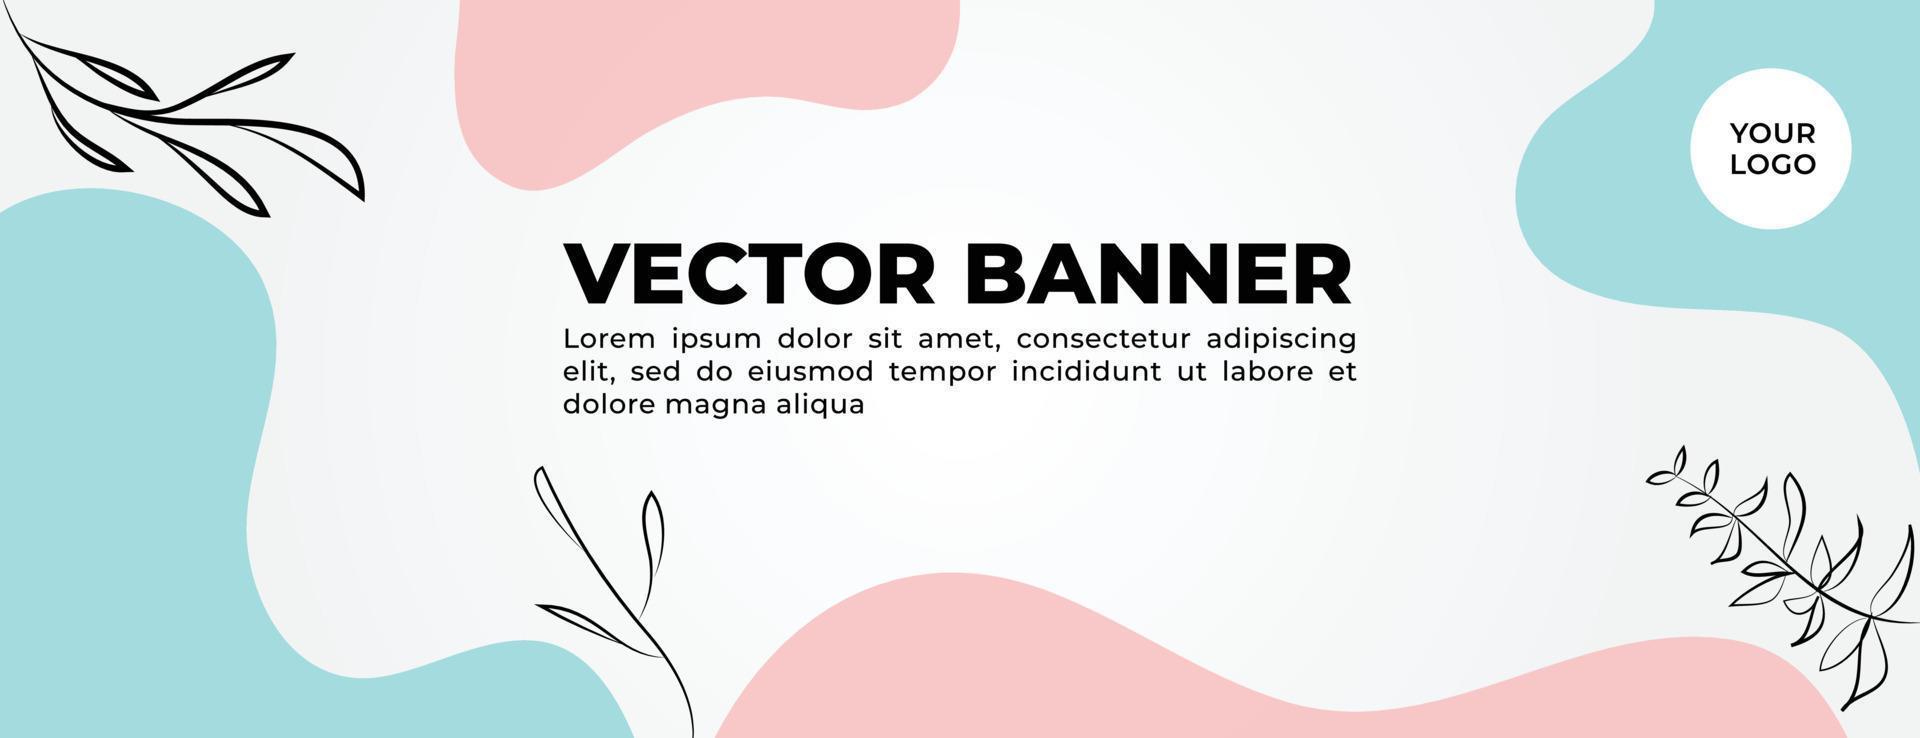 banner vetorial azul e rosa com design de modelo de forma irregular vetor